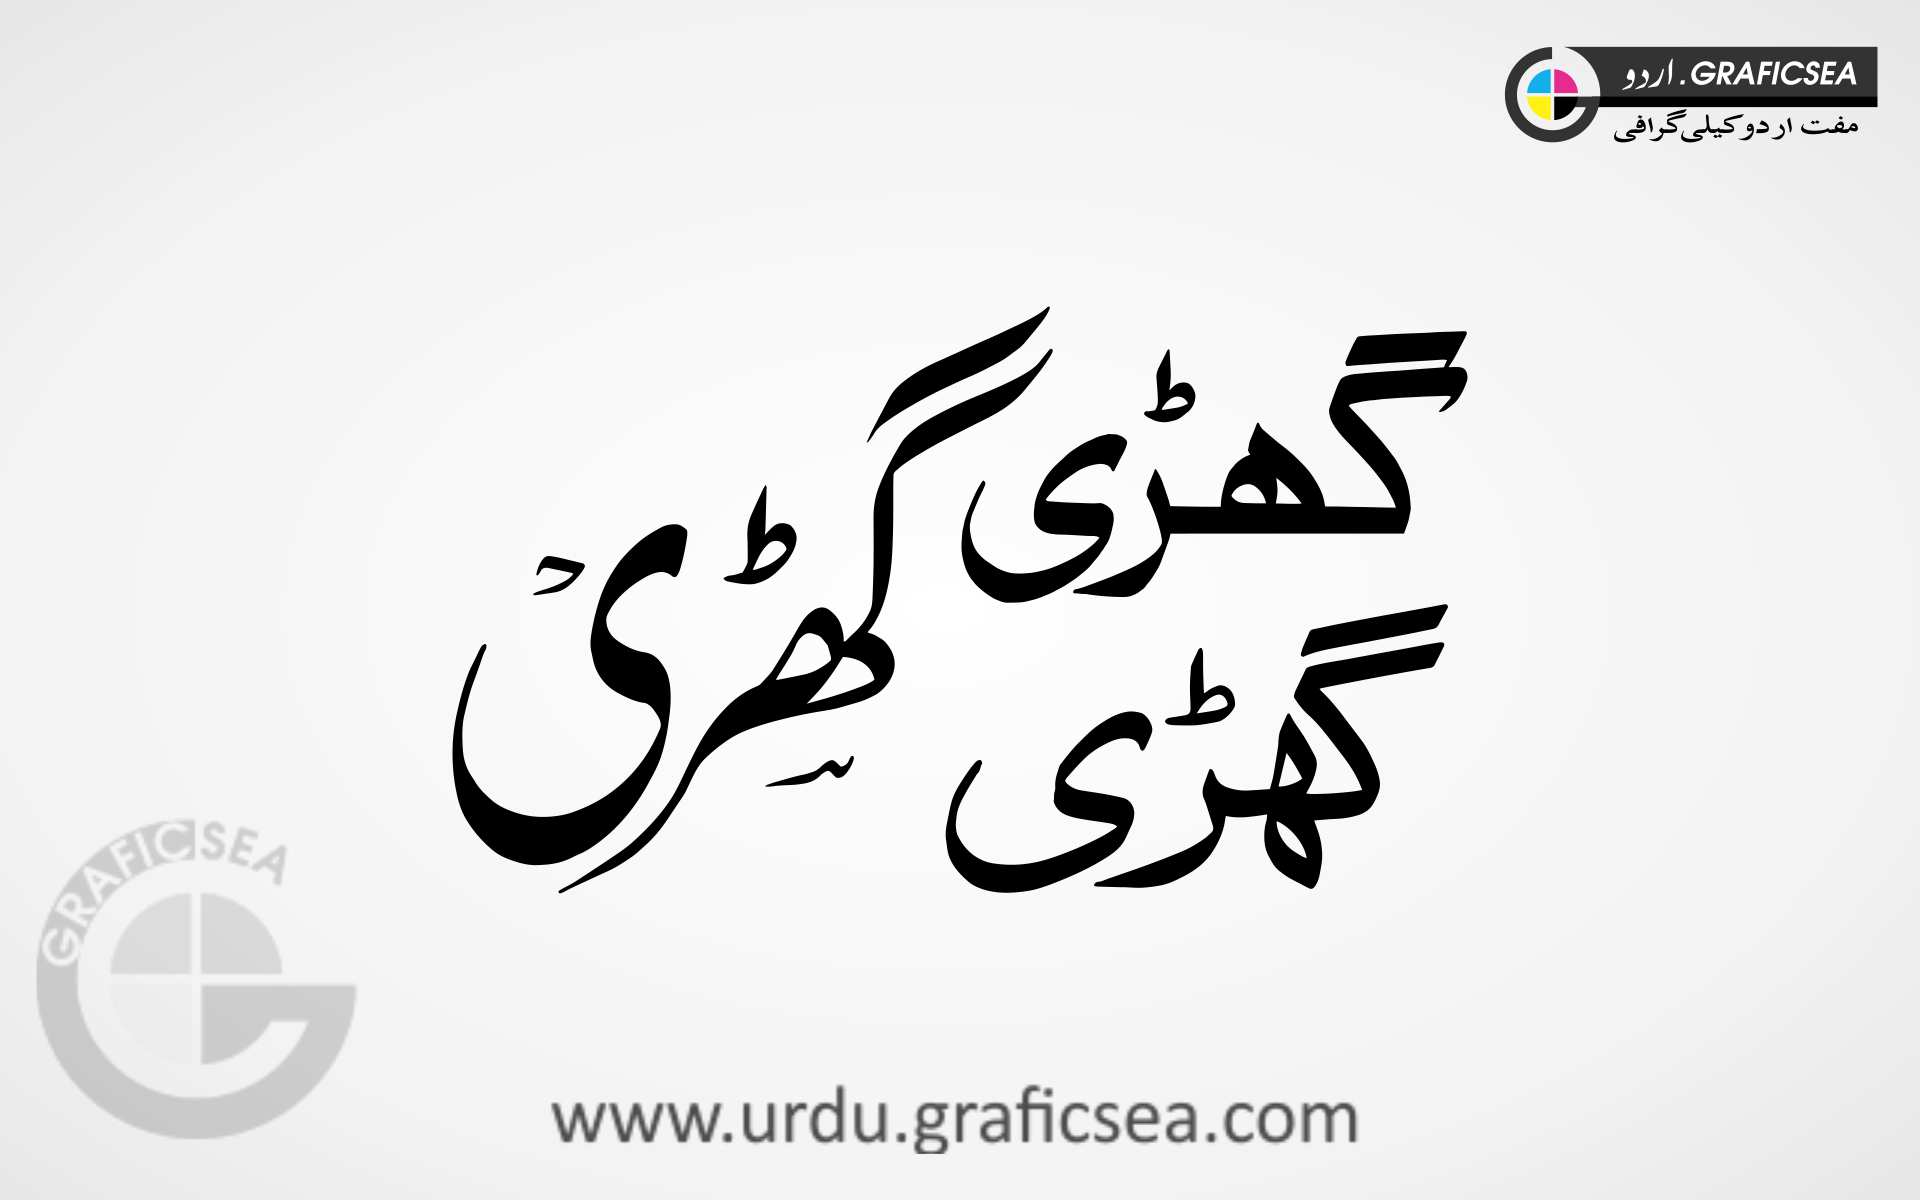 3 Font Type Ghari, Watch Words Urdu Calligraphy